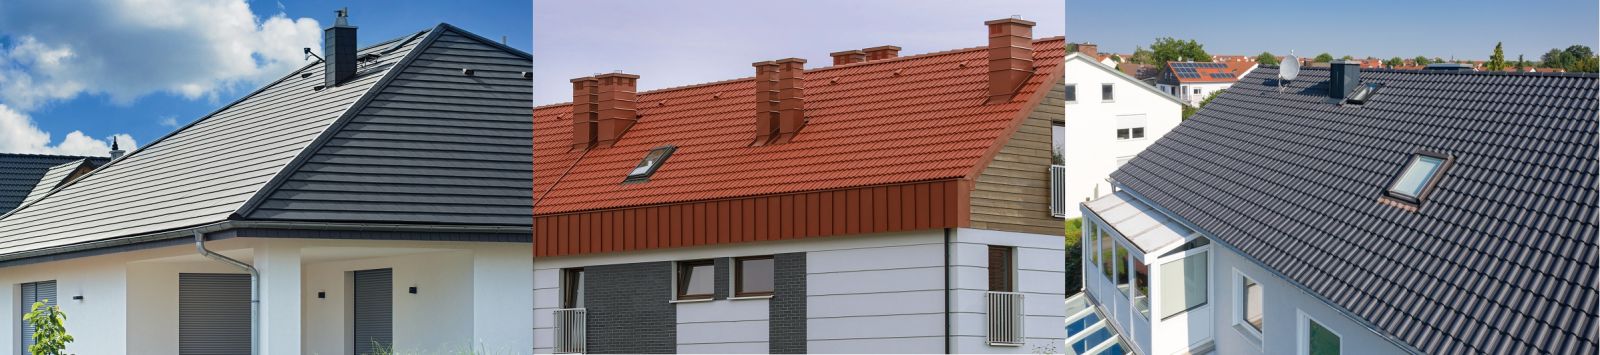 Dachówki cementowe CREATON to popularne, atrakcyjne wizualnie i cenowo rozwiązanie pokrycia dachowego. Od lewej modele: KAPSTADT, GÖTEBORG, HEIDELBERG. Wszystkie oferowane są w powłoce DURATOP PRO lub PLANAR (fot. CREATON)